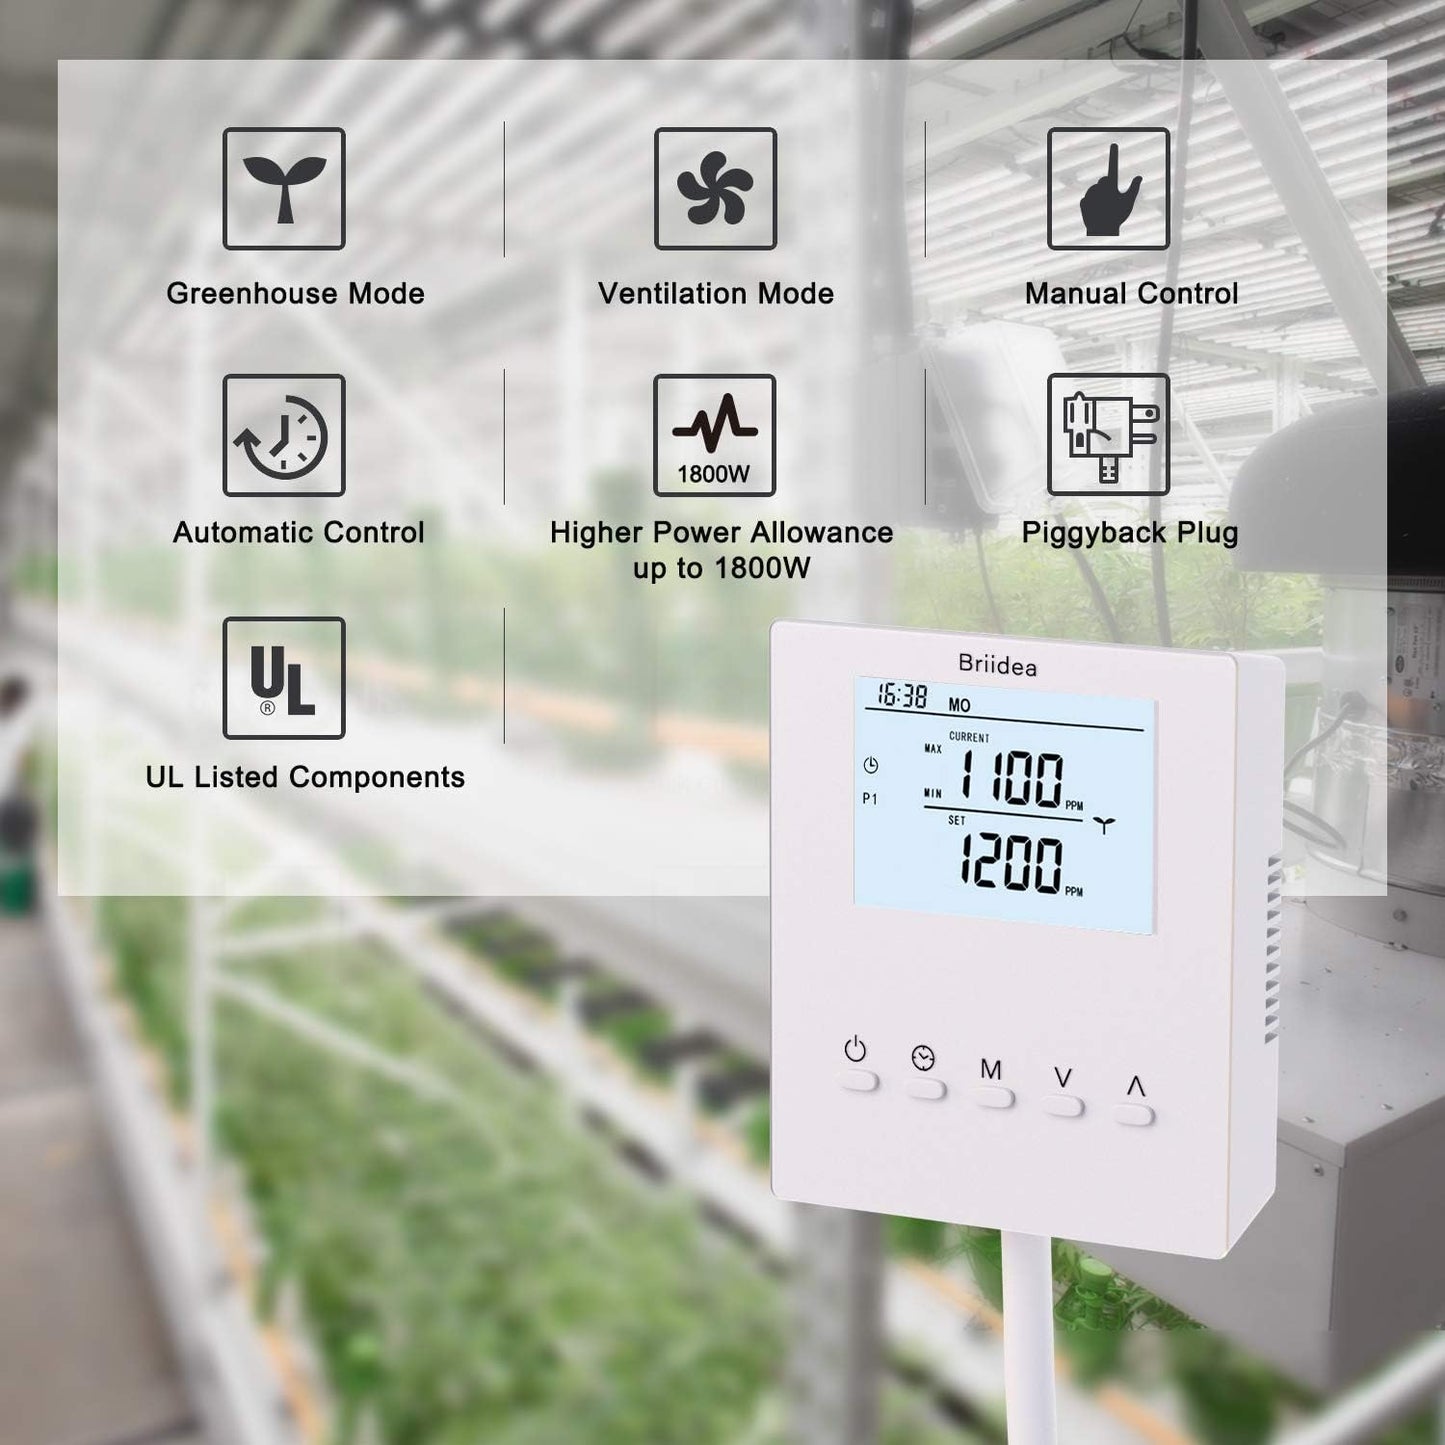 Briidea - Controlador de CO2, monitor de CO2 más nuevo con sensor remoto de CO2, fotocélula para control diurno y nocturno, función programable para evitar residuos de CO2 para invernadero de sala de cultivo